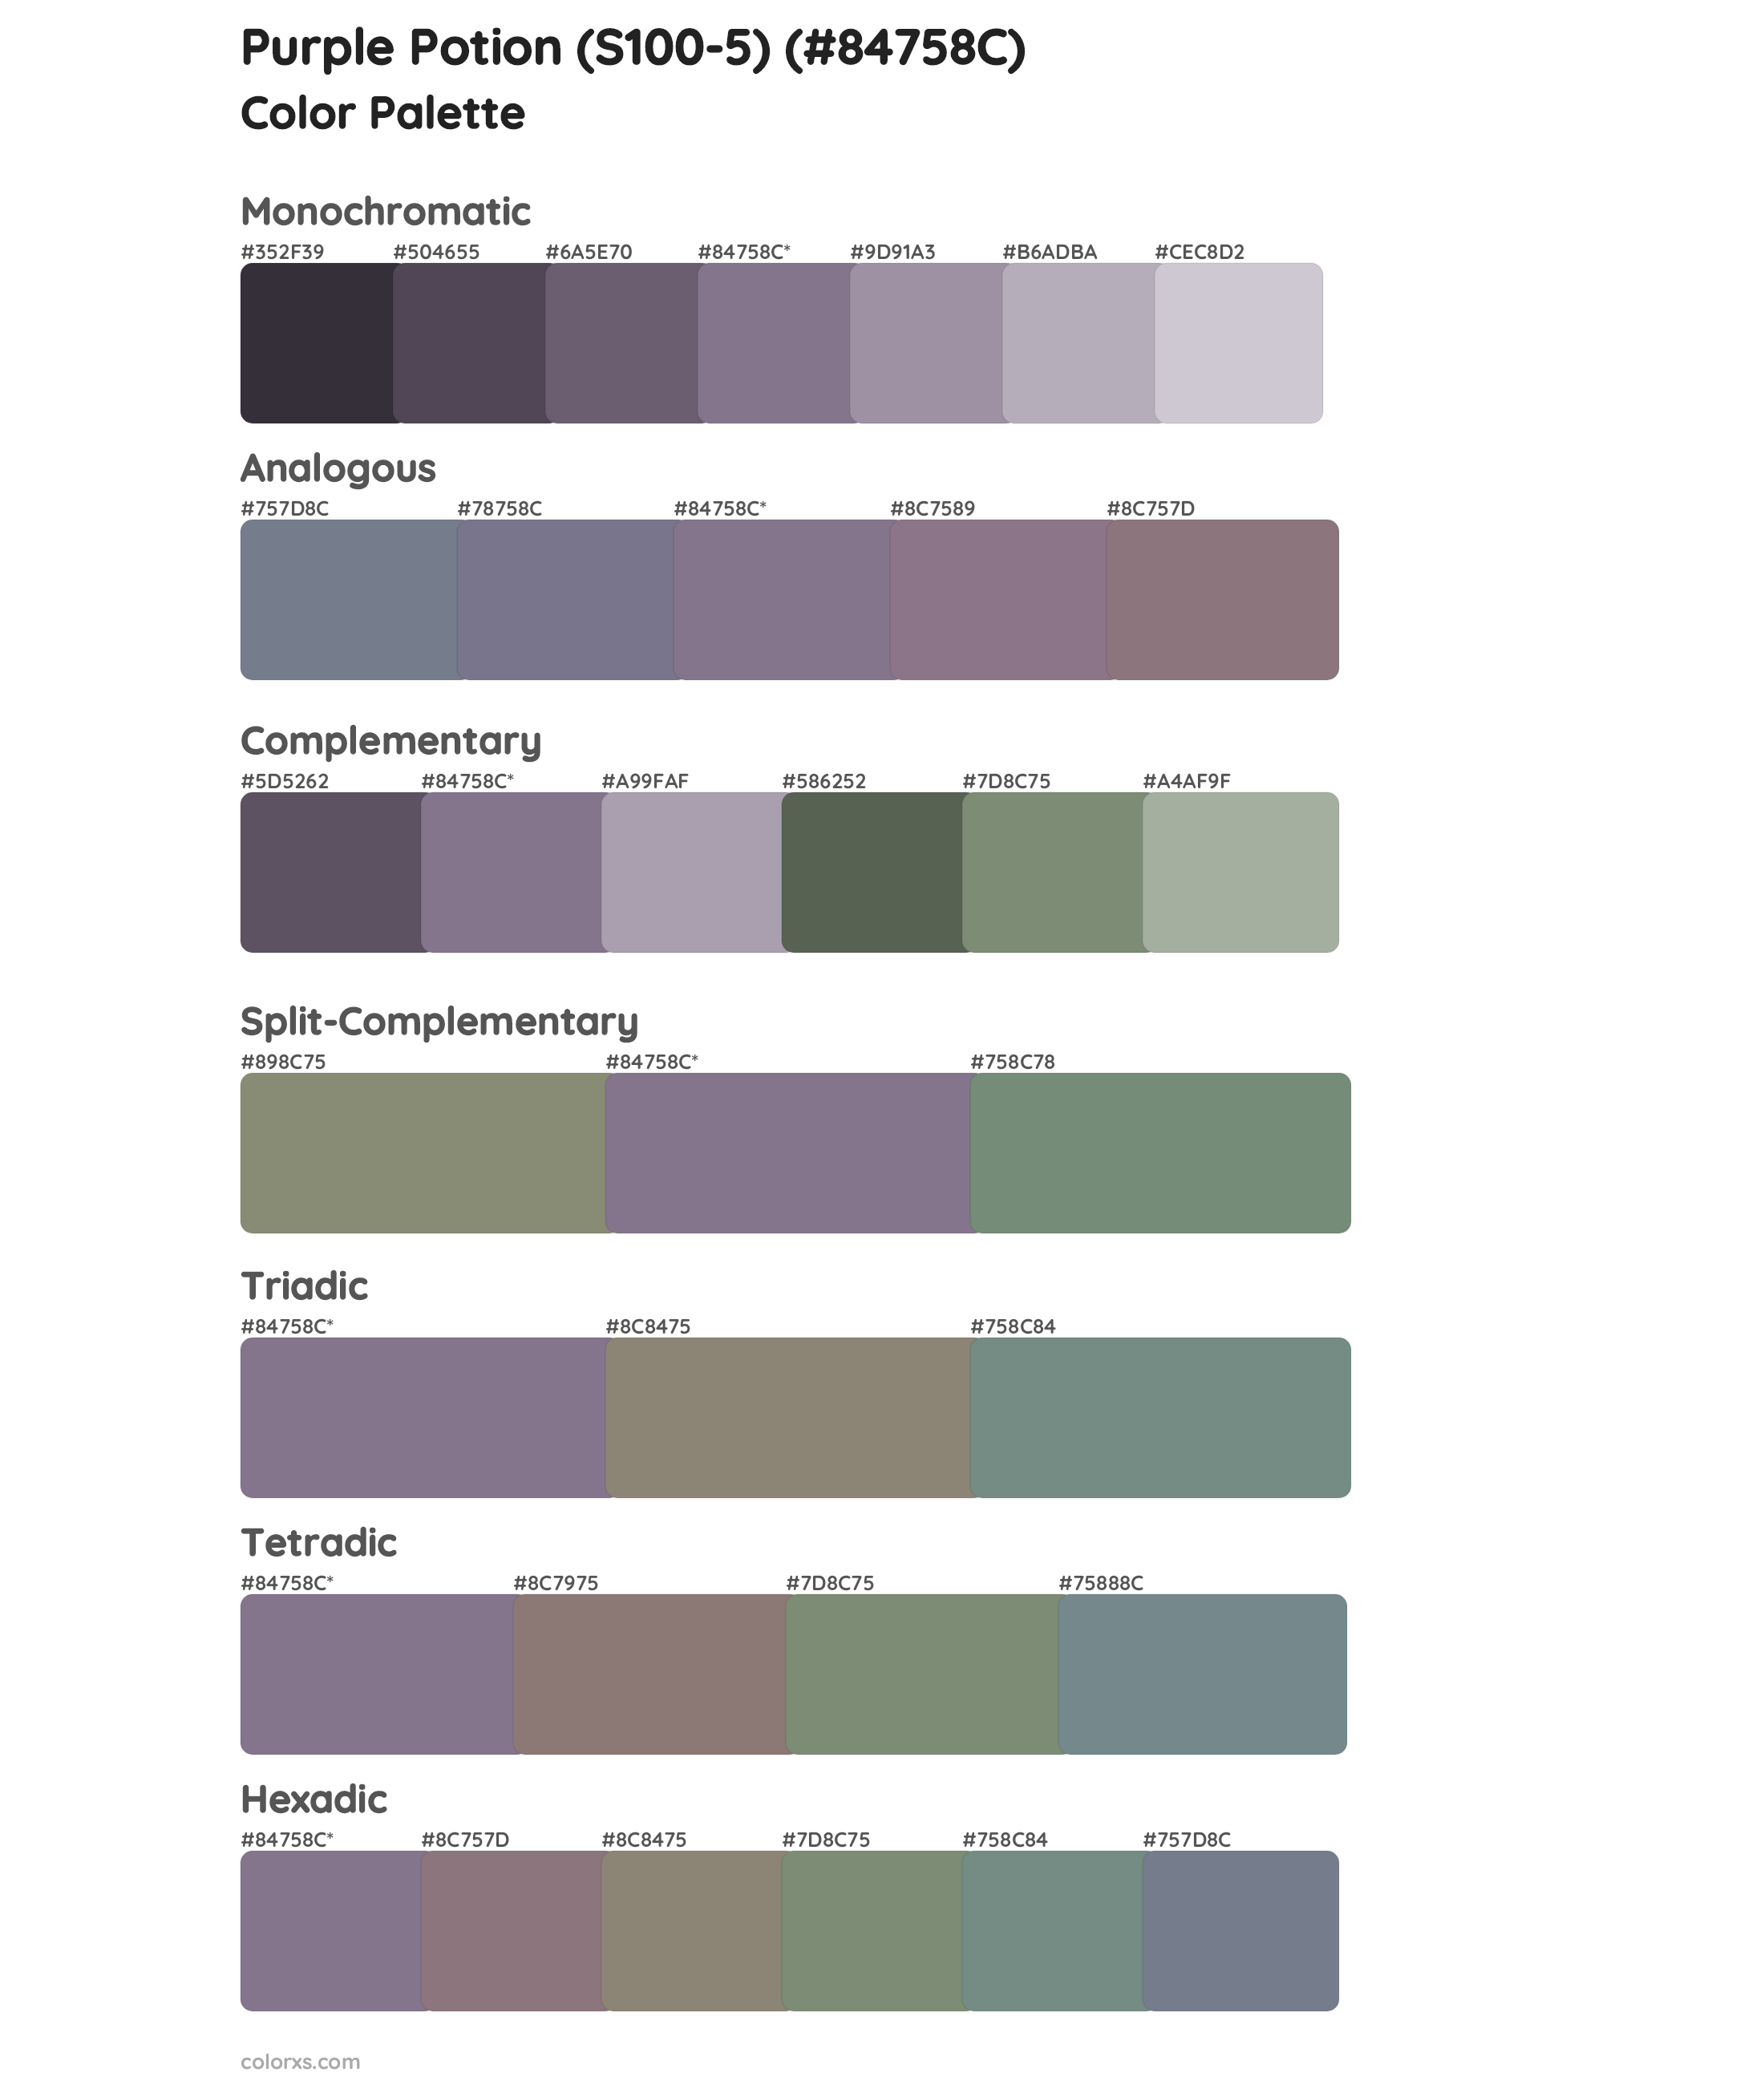 Purple Potion (S100-5) Color Scheme Palettes